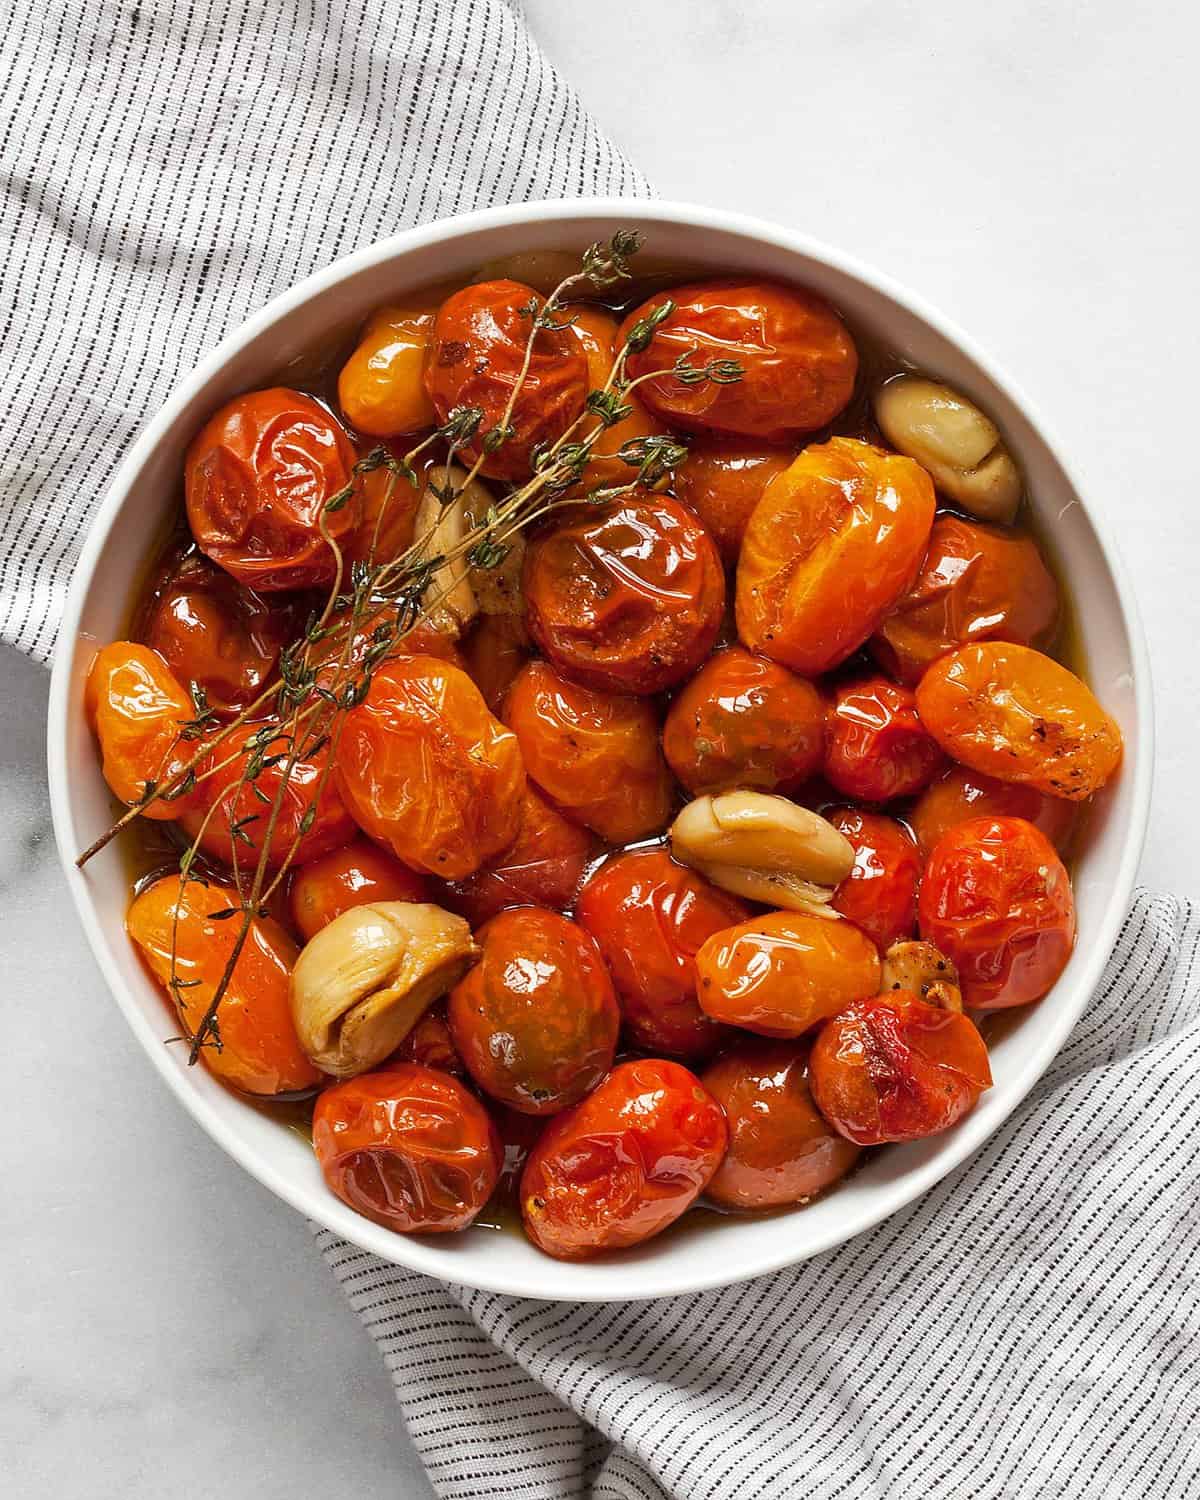 Tomato confit in a bowl.